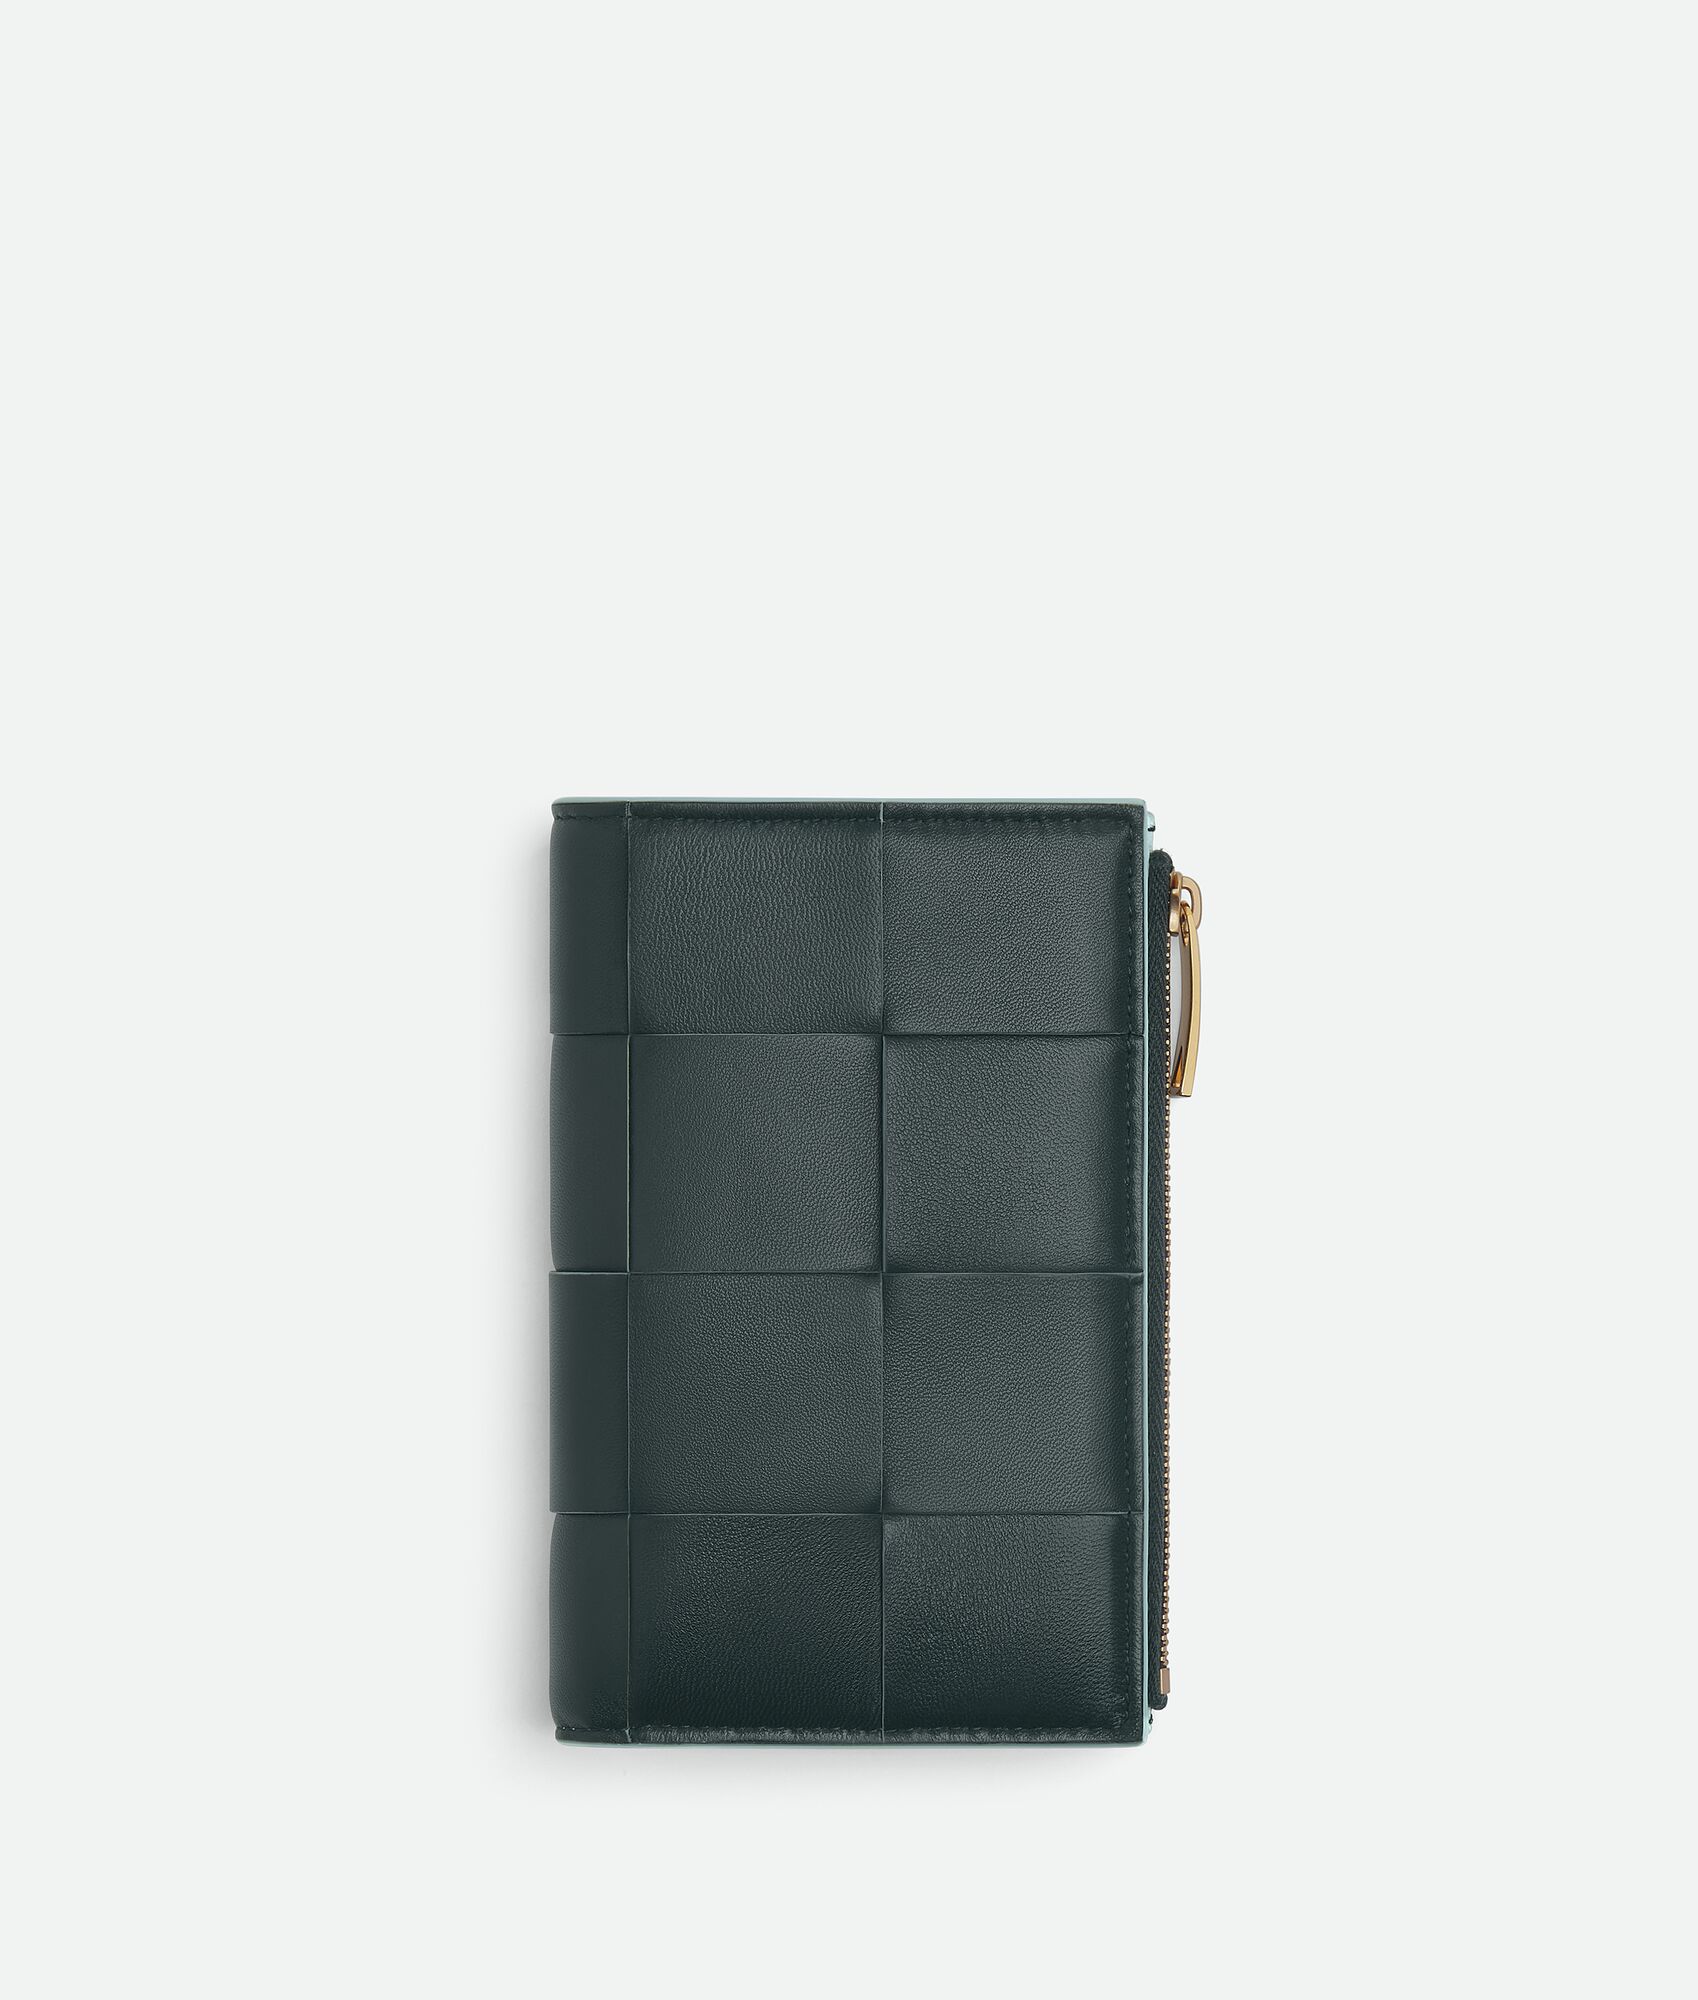 おすすめの人気レディース二つ折り財布は、ボッテガ・ヴェネタのミディアム カセット 二つ折りファスナーウォレットバイカラー